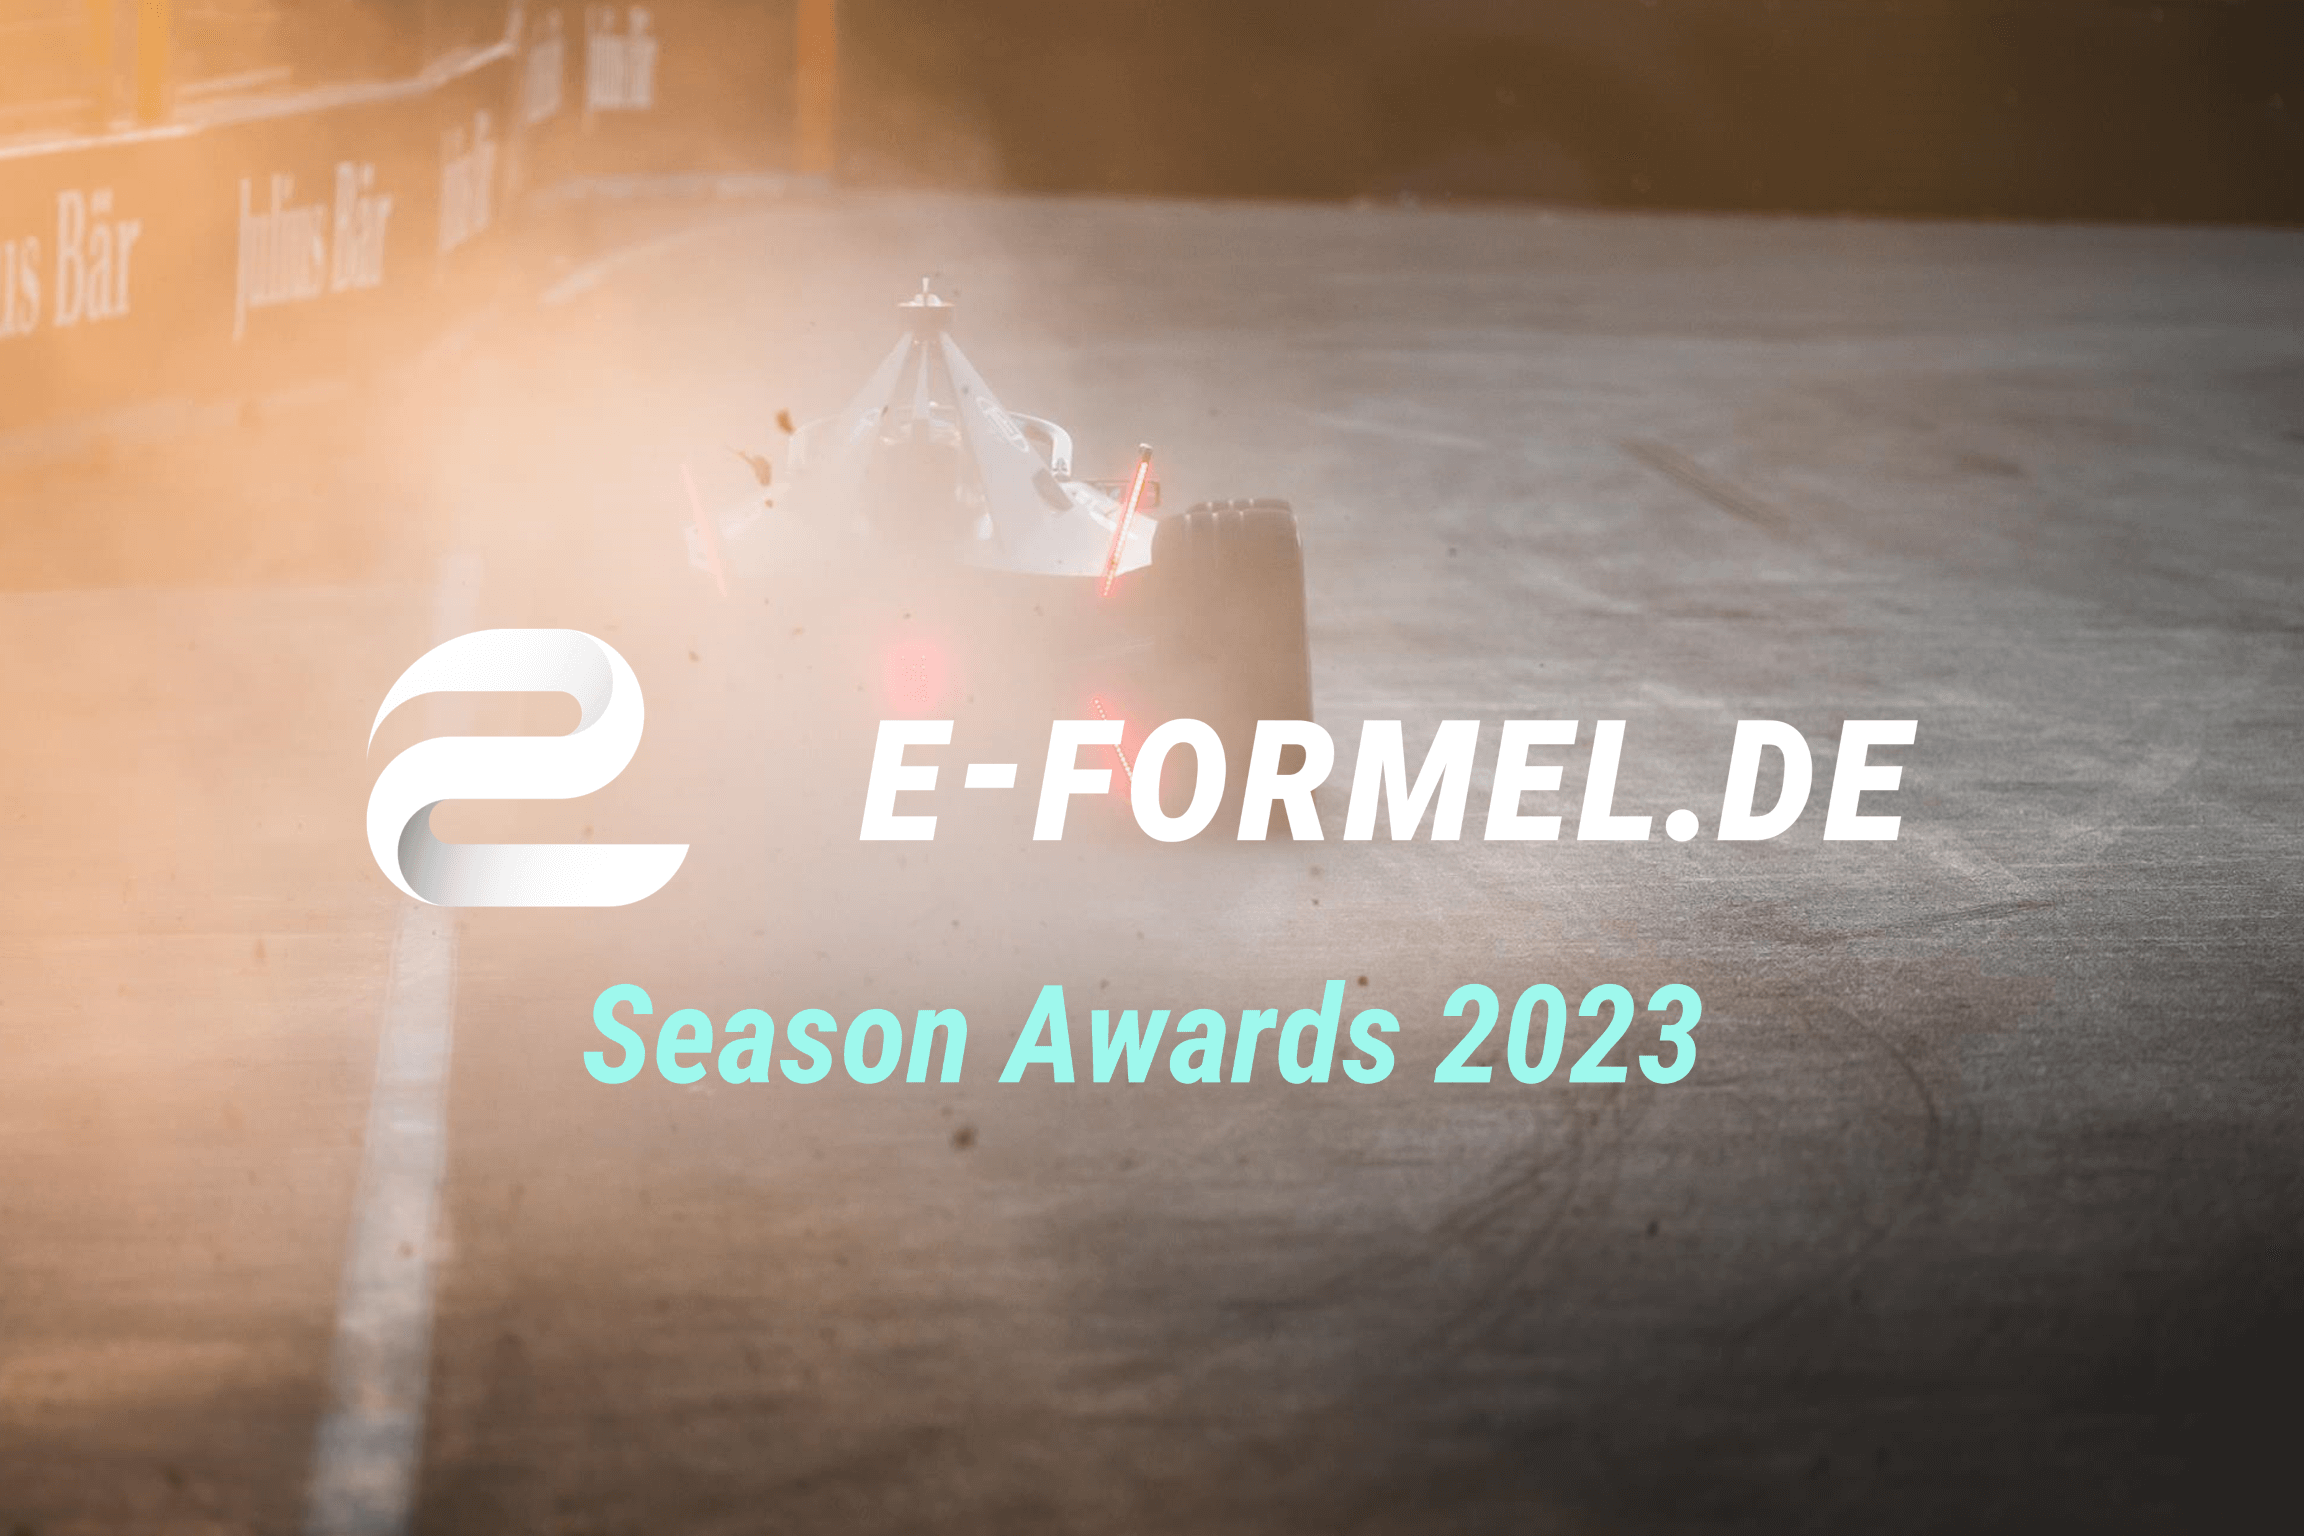 e-Formel.de Season Awards 2023: Voting gestartet - mach mit!